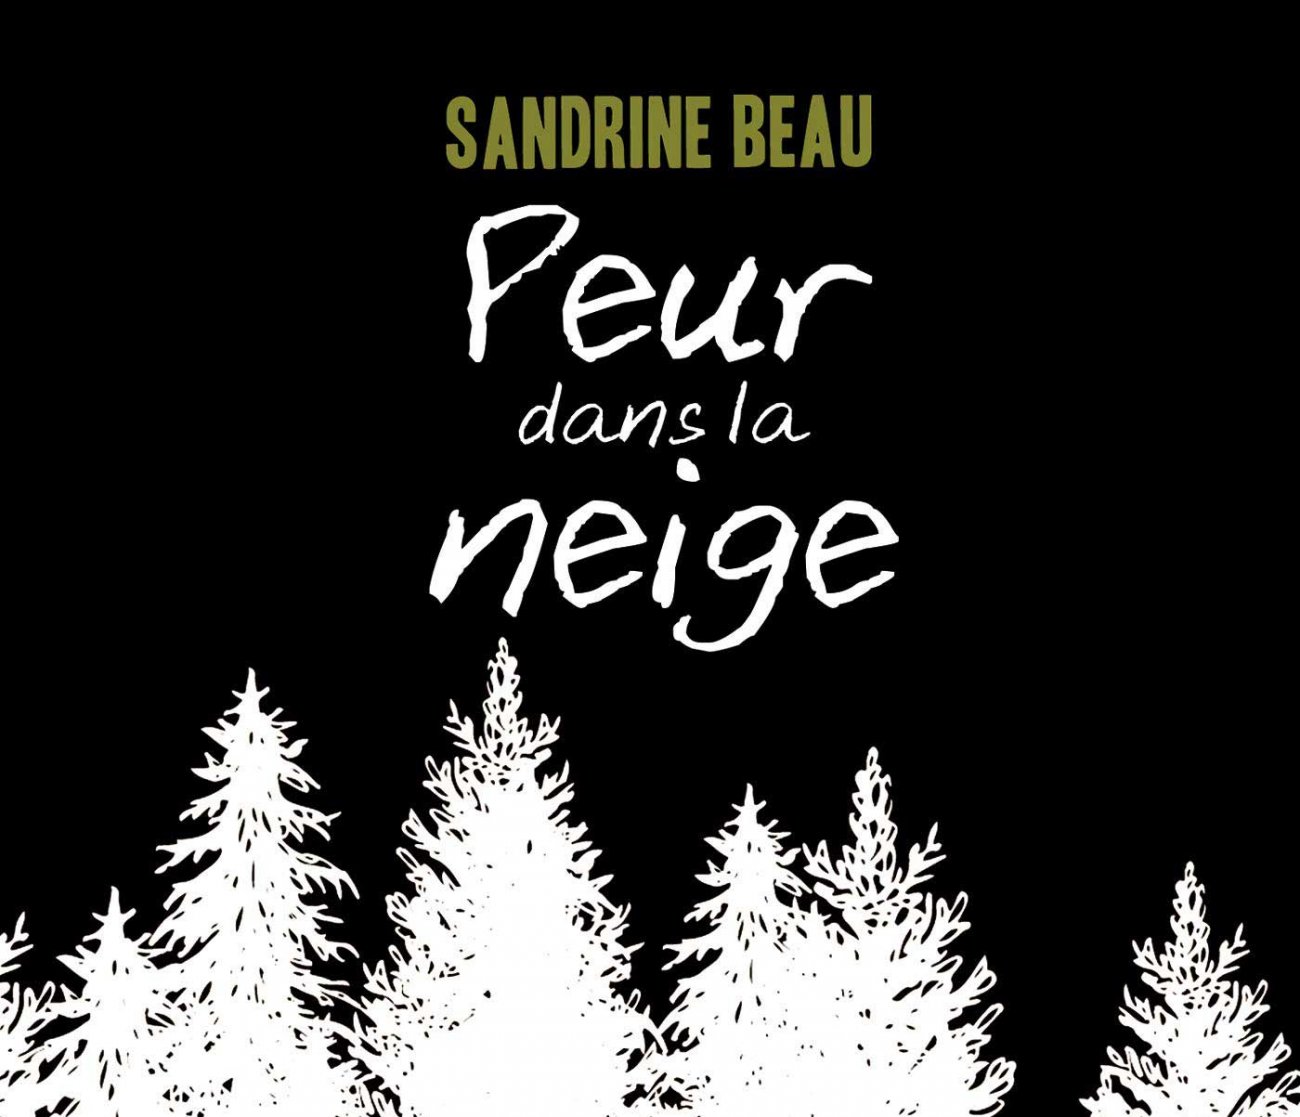 Peur dans la neige, Sandrine Beau